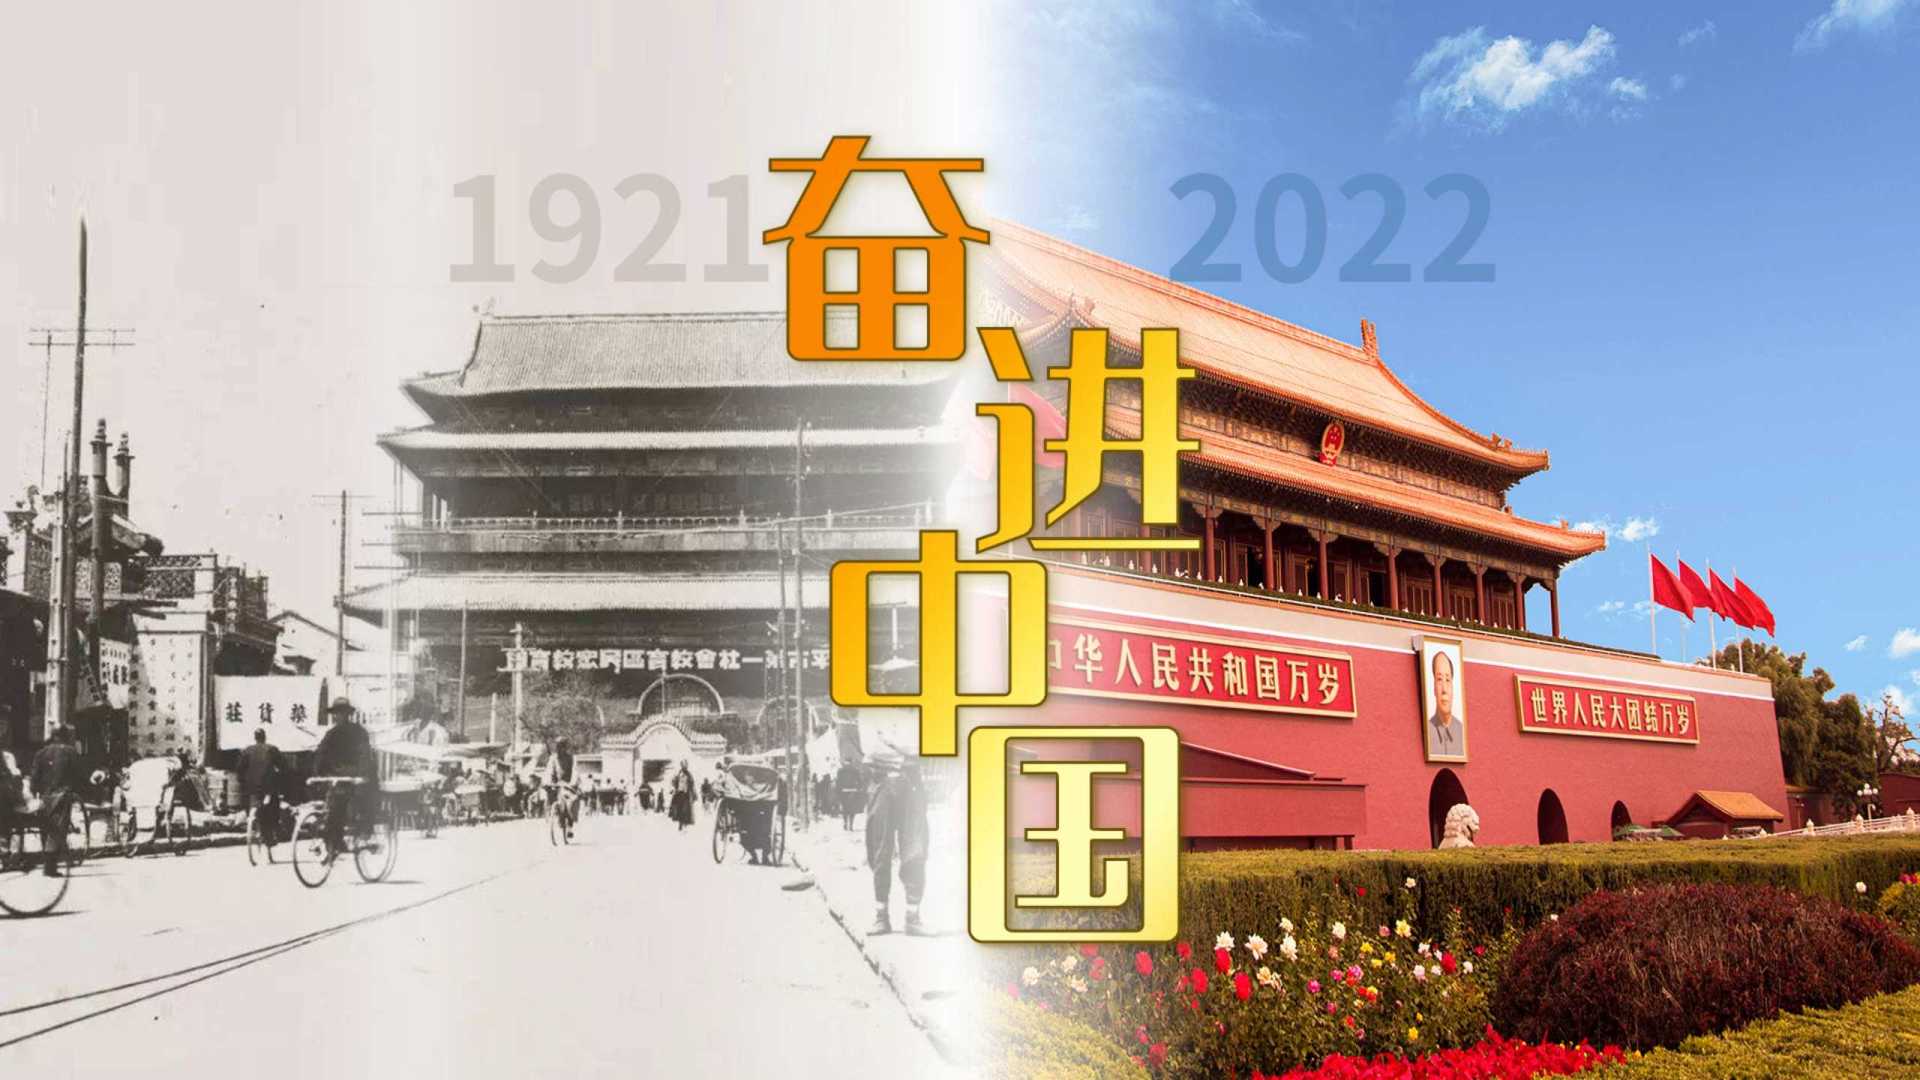 【奋进中国】1921-2022百年沧桑，时代巨变。这101年来，发生了太多改变。